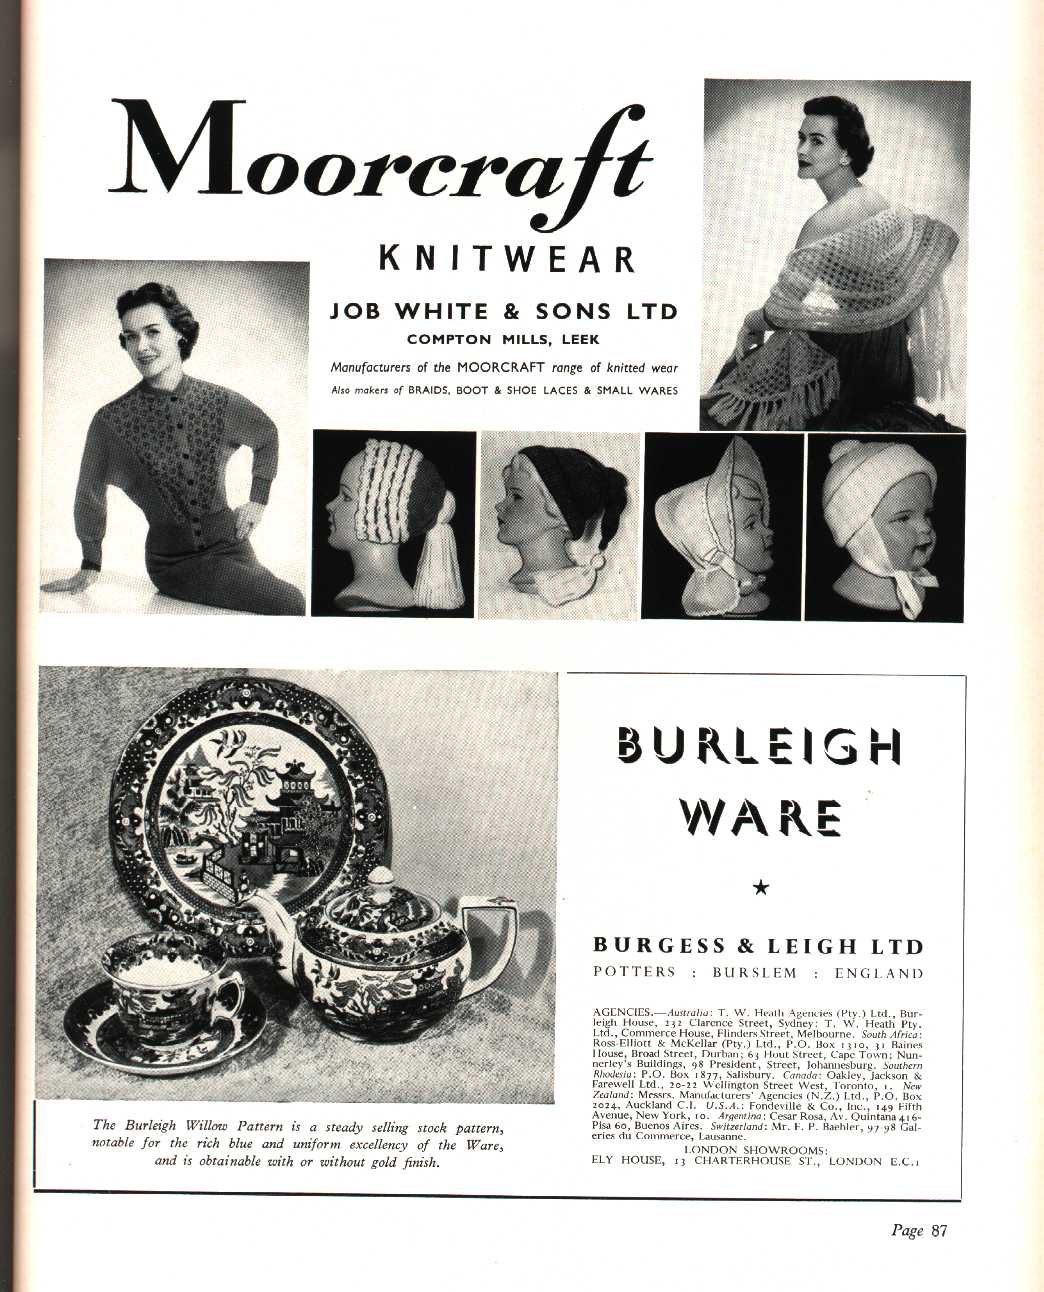 Job White & Sons Ltd (Leek) knitwear manufacturer, Burgess & Leigh Ltd (Burslem) (potter)